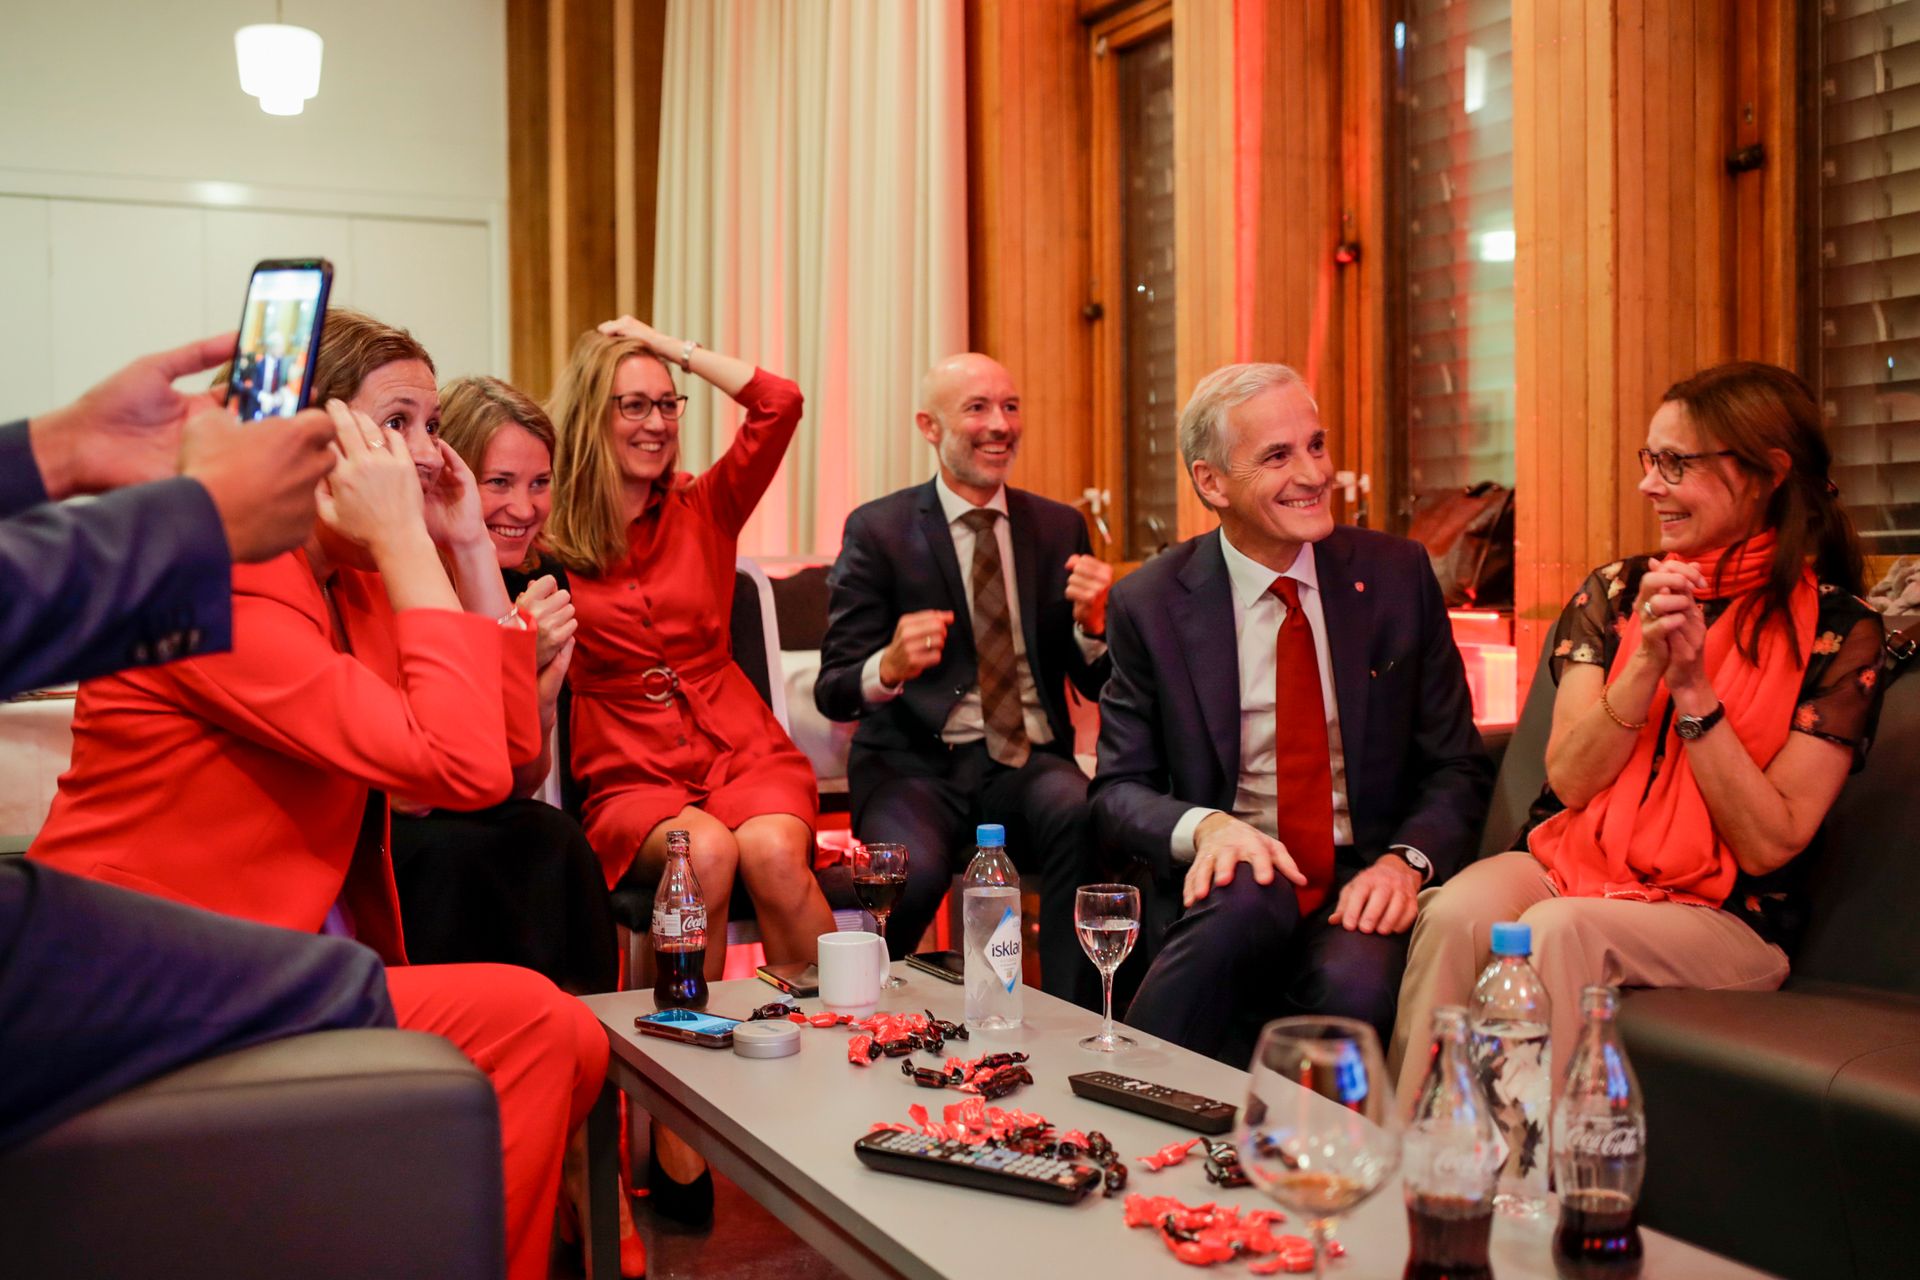 Støre, med rødt slips, og en gruppe støttespillere sitter rundt et bord og smiler og jubler, mens de antakelig ser mot en skjerm eller person som deler foreløpige resultater fra opptellingen.